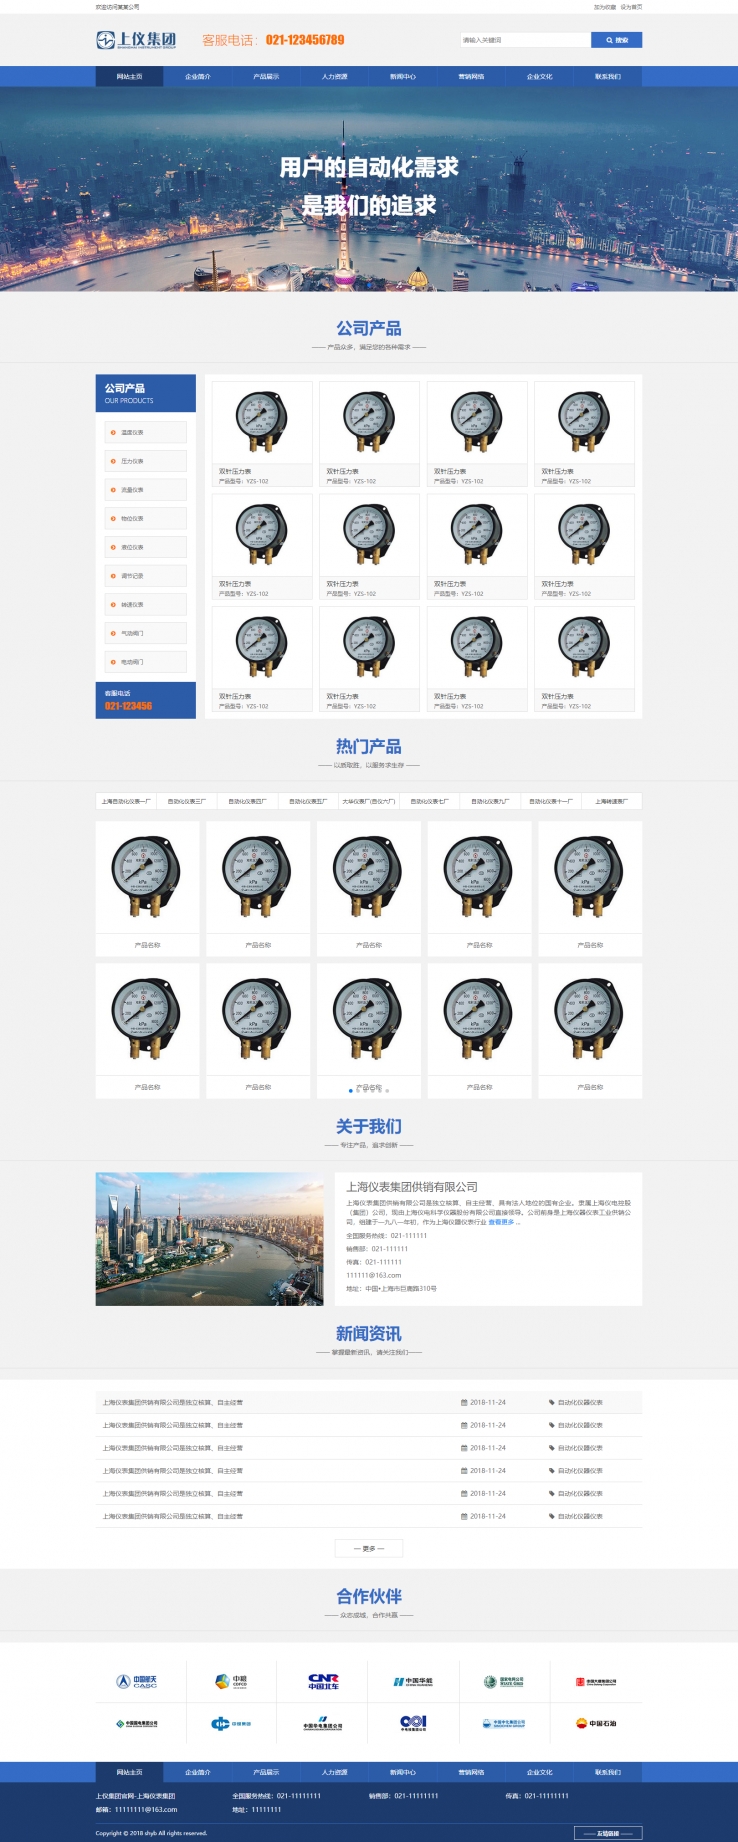 蓝色简洁风格的工业仪表设备企业网站源码下载